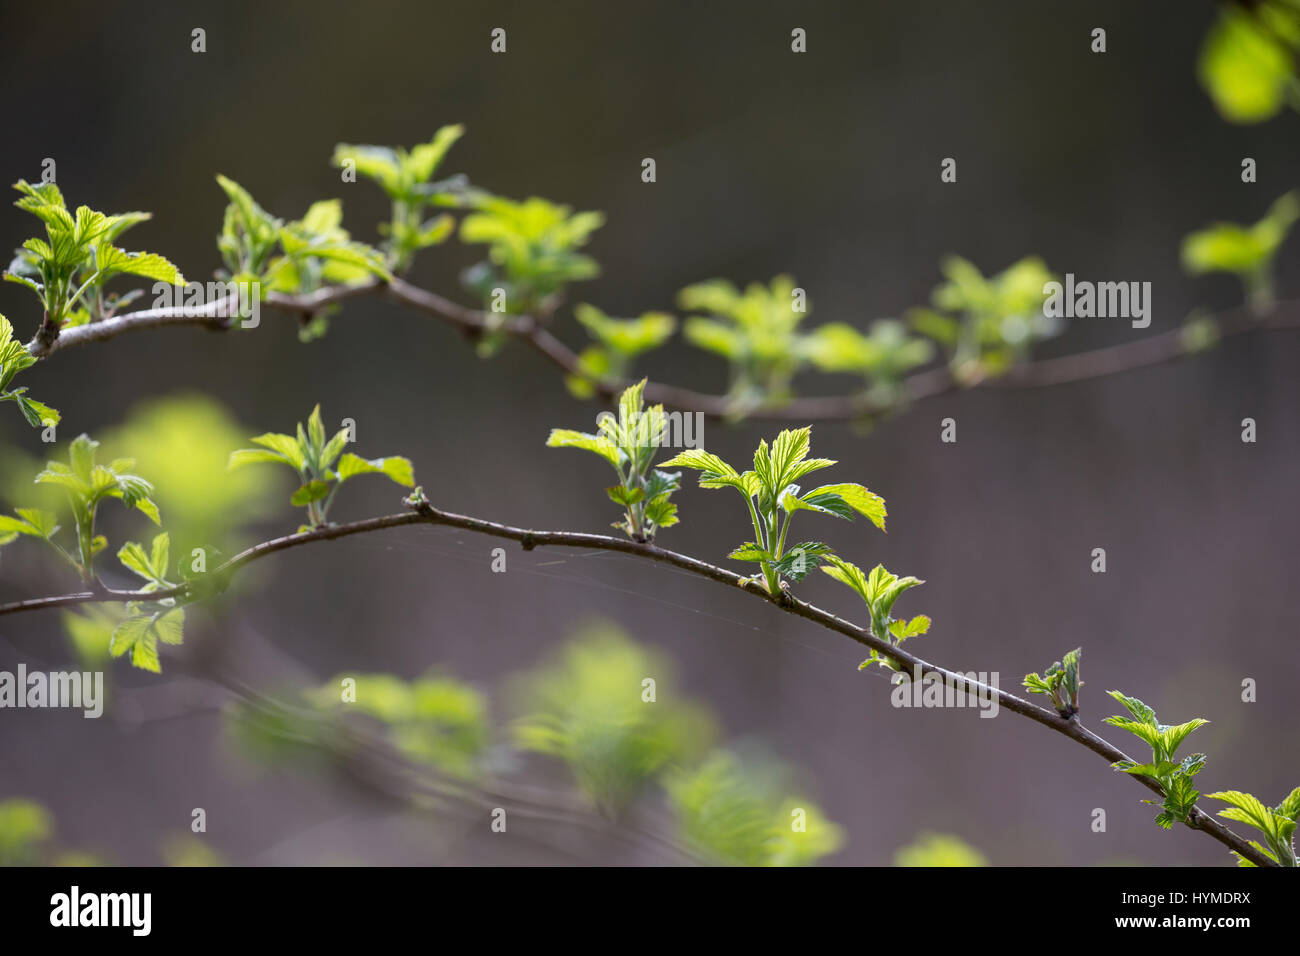 Wilde Himbeere, junge, zarte Blätter vor der Blüte, Himbeer-Ranken, Rubus idaeus, lampone, raspa-berry Foto Stock